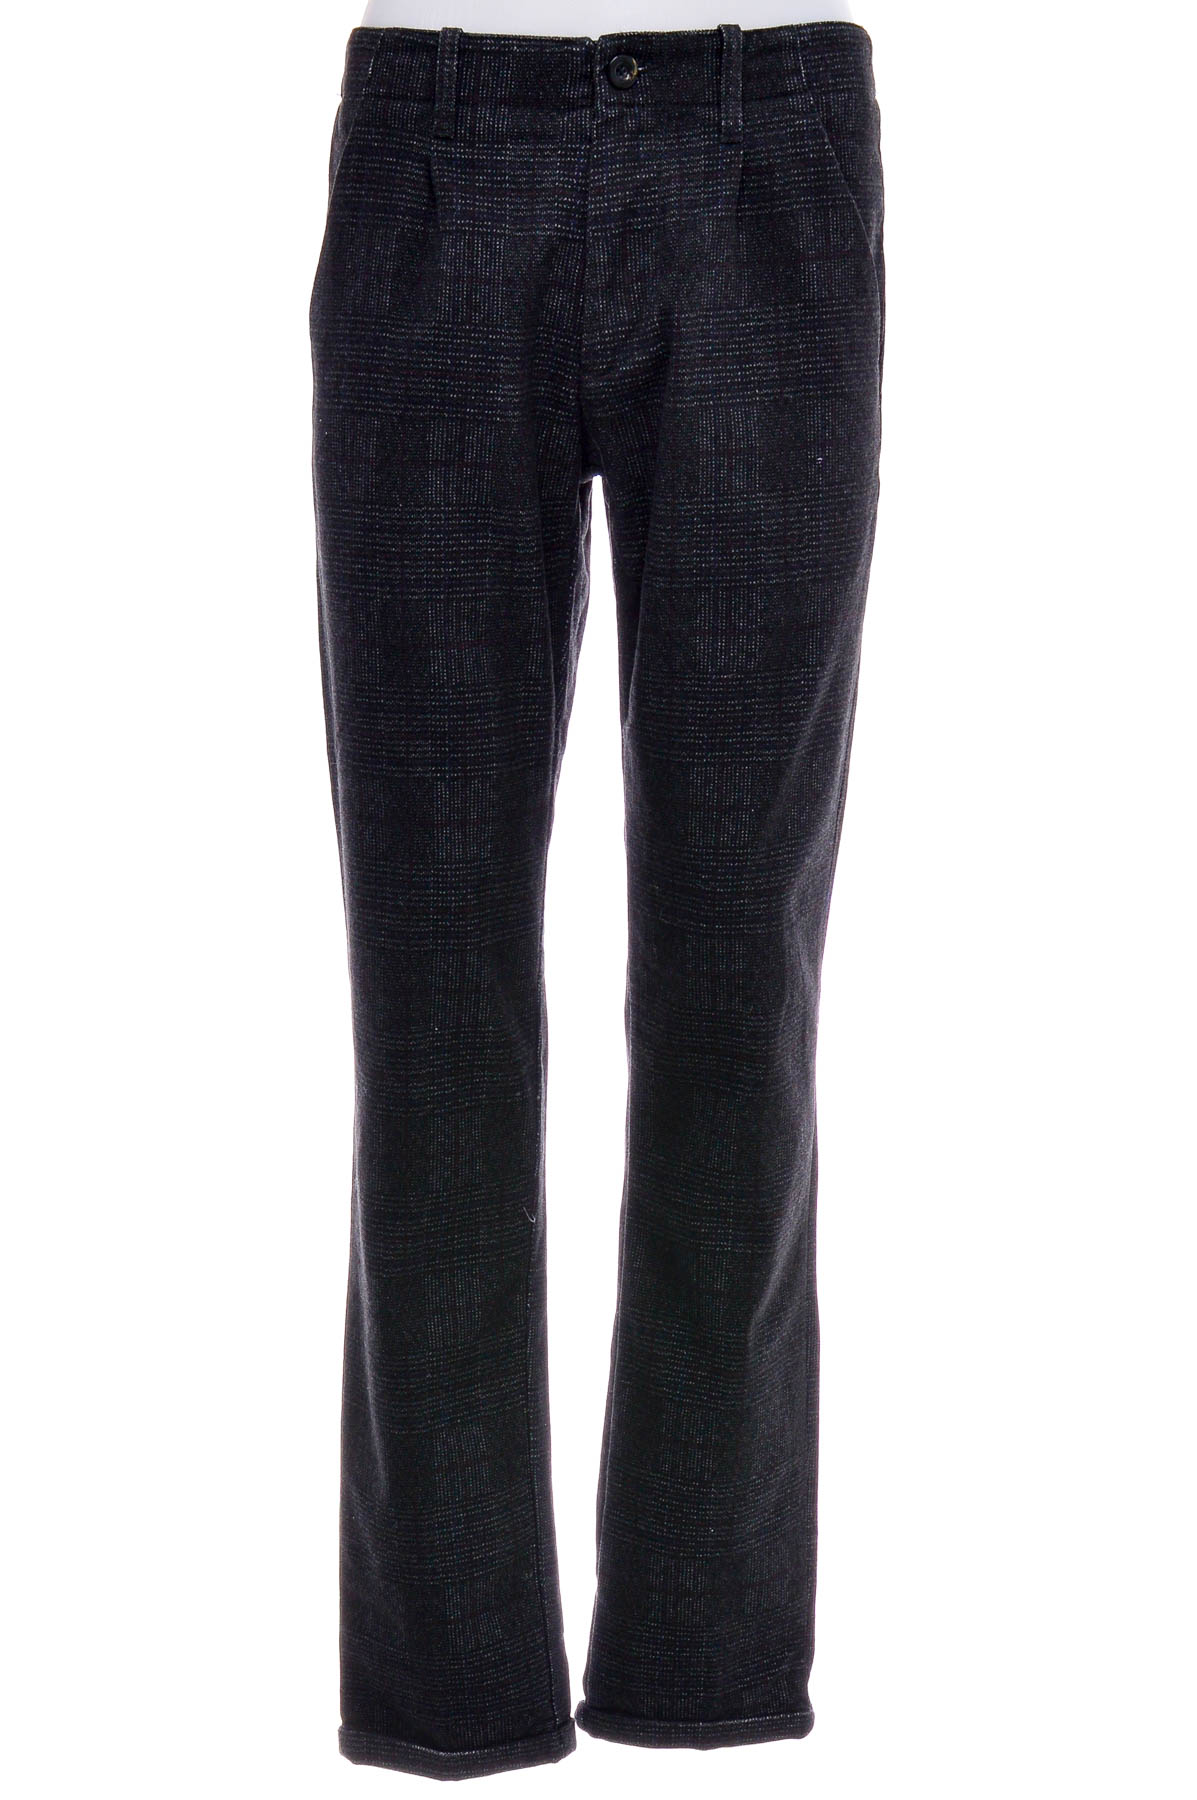 Men's trousers - Conbipel - 0